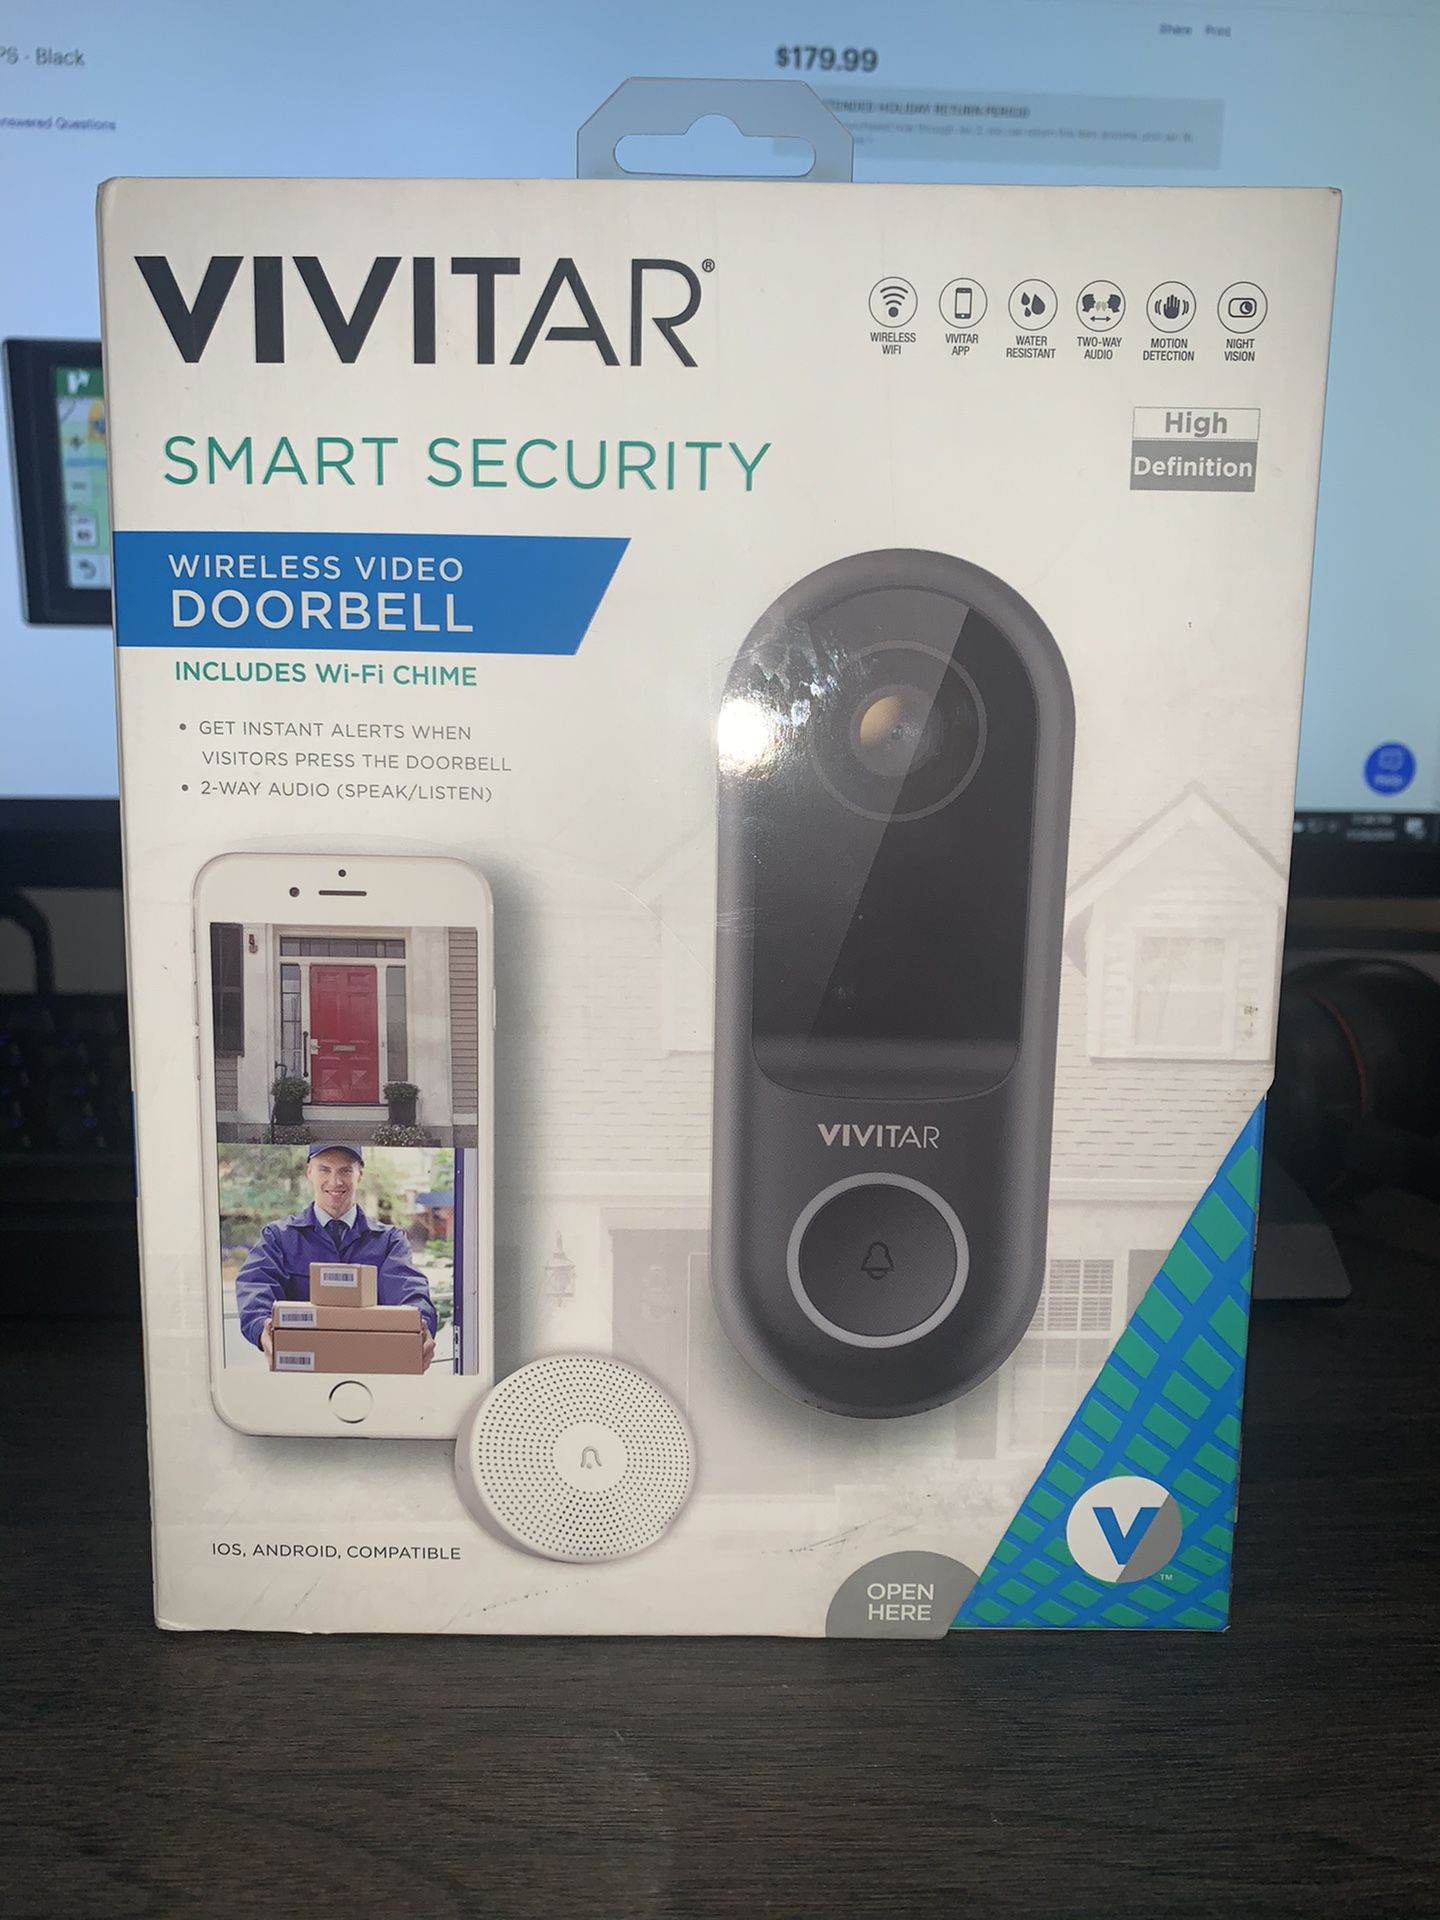 Vivitar Security camera and door bell